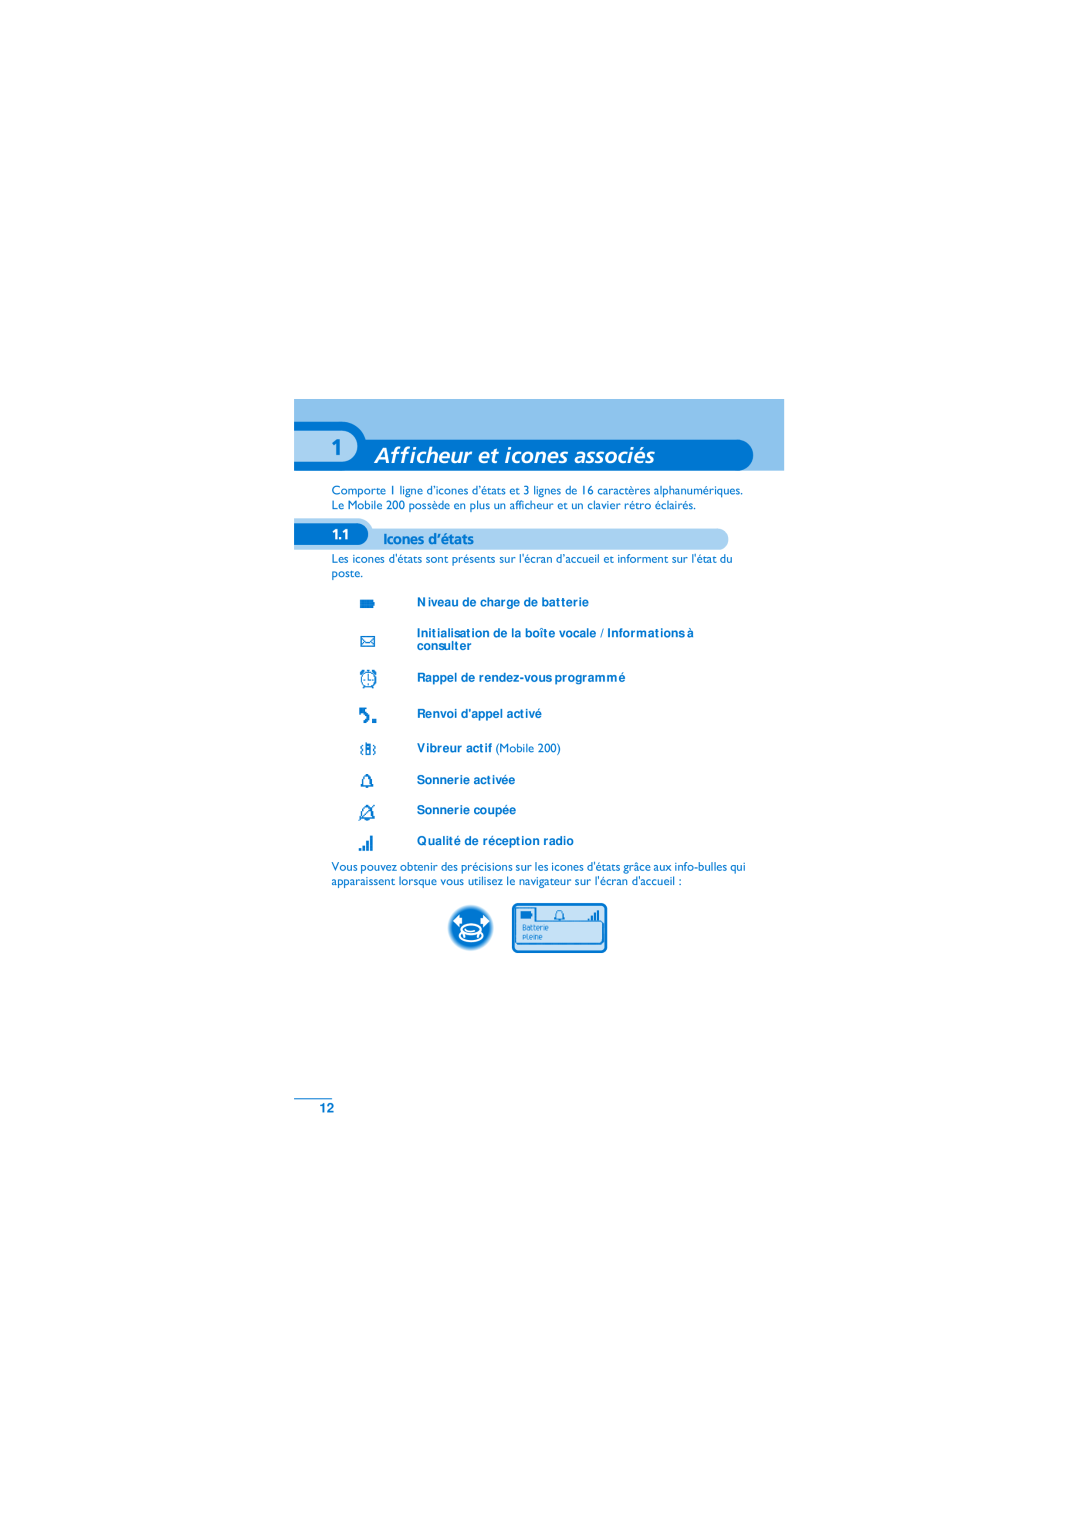 Alcatel-Lucent Mobile Reflexes 100 manual Afficheur et icones associés, Icones d’états, Niveau de charge de batterie 